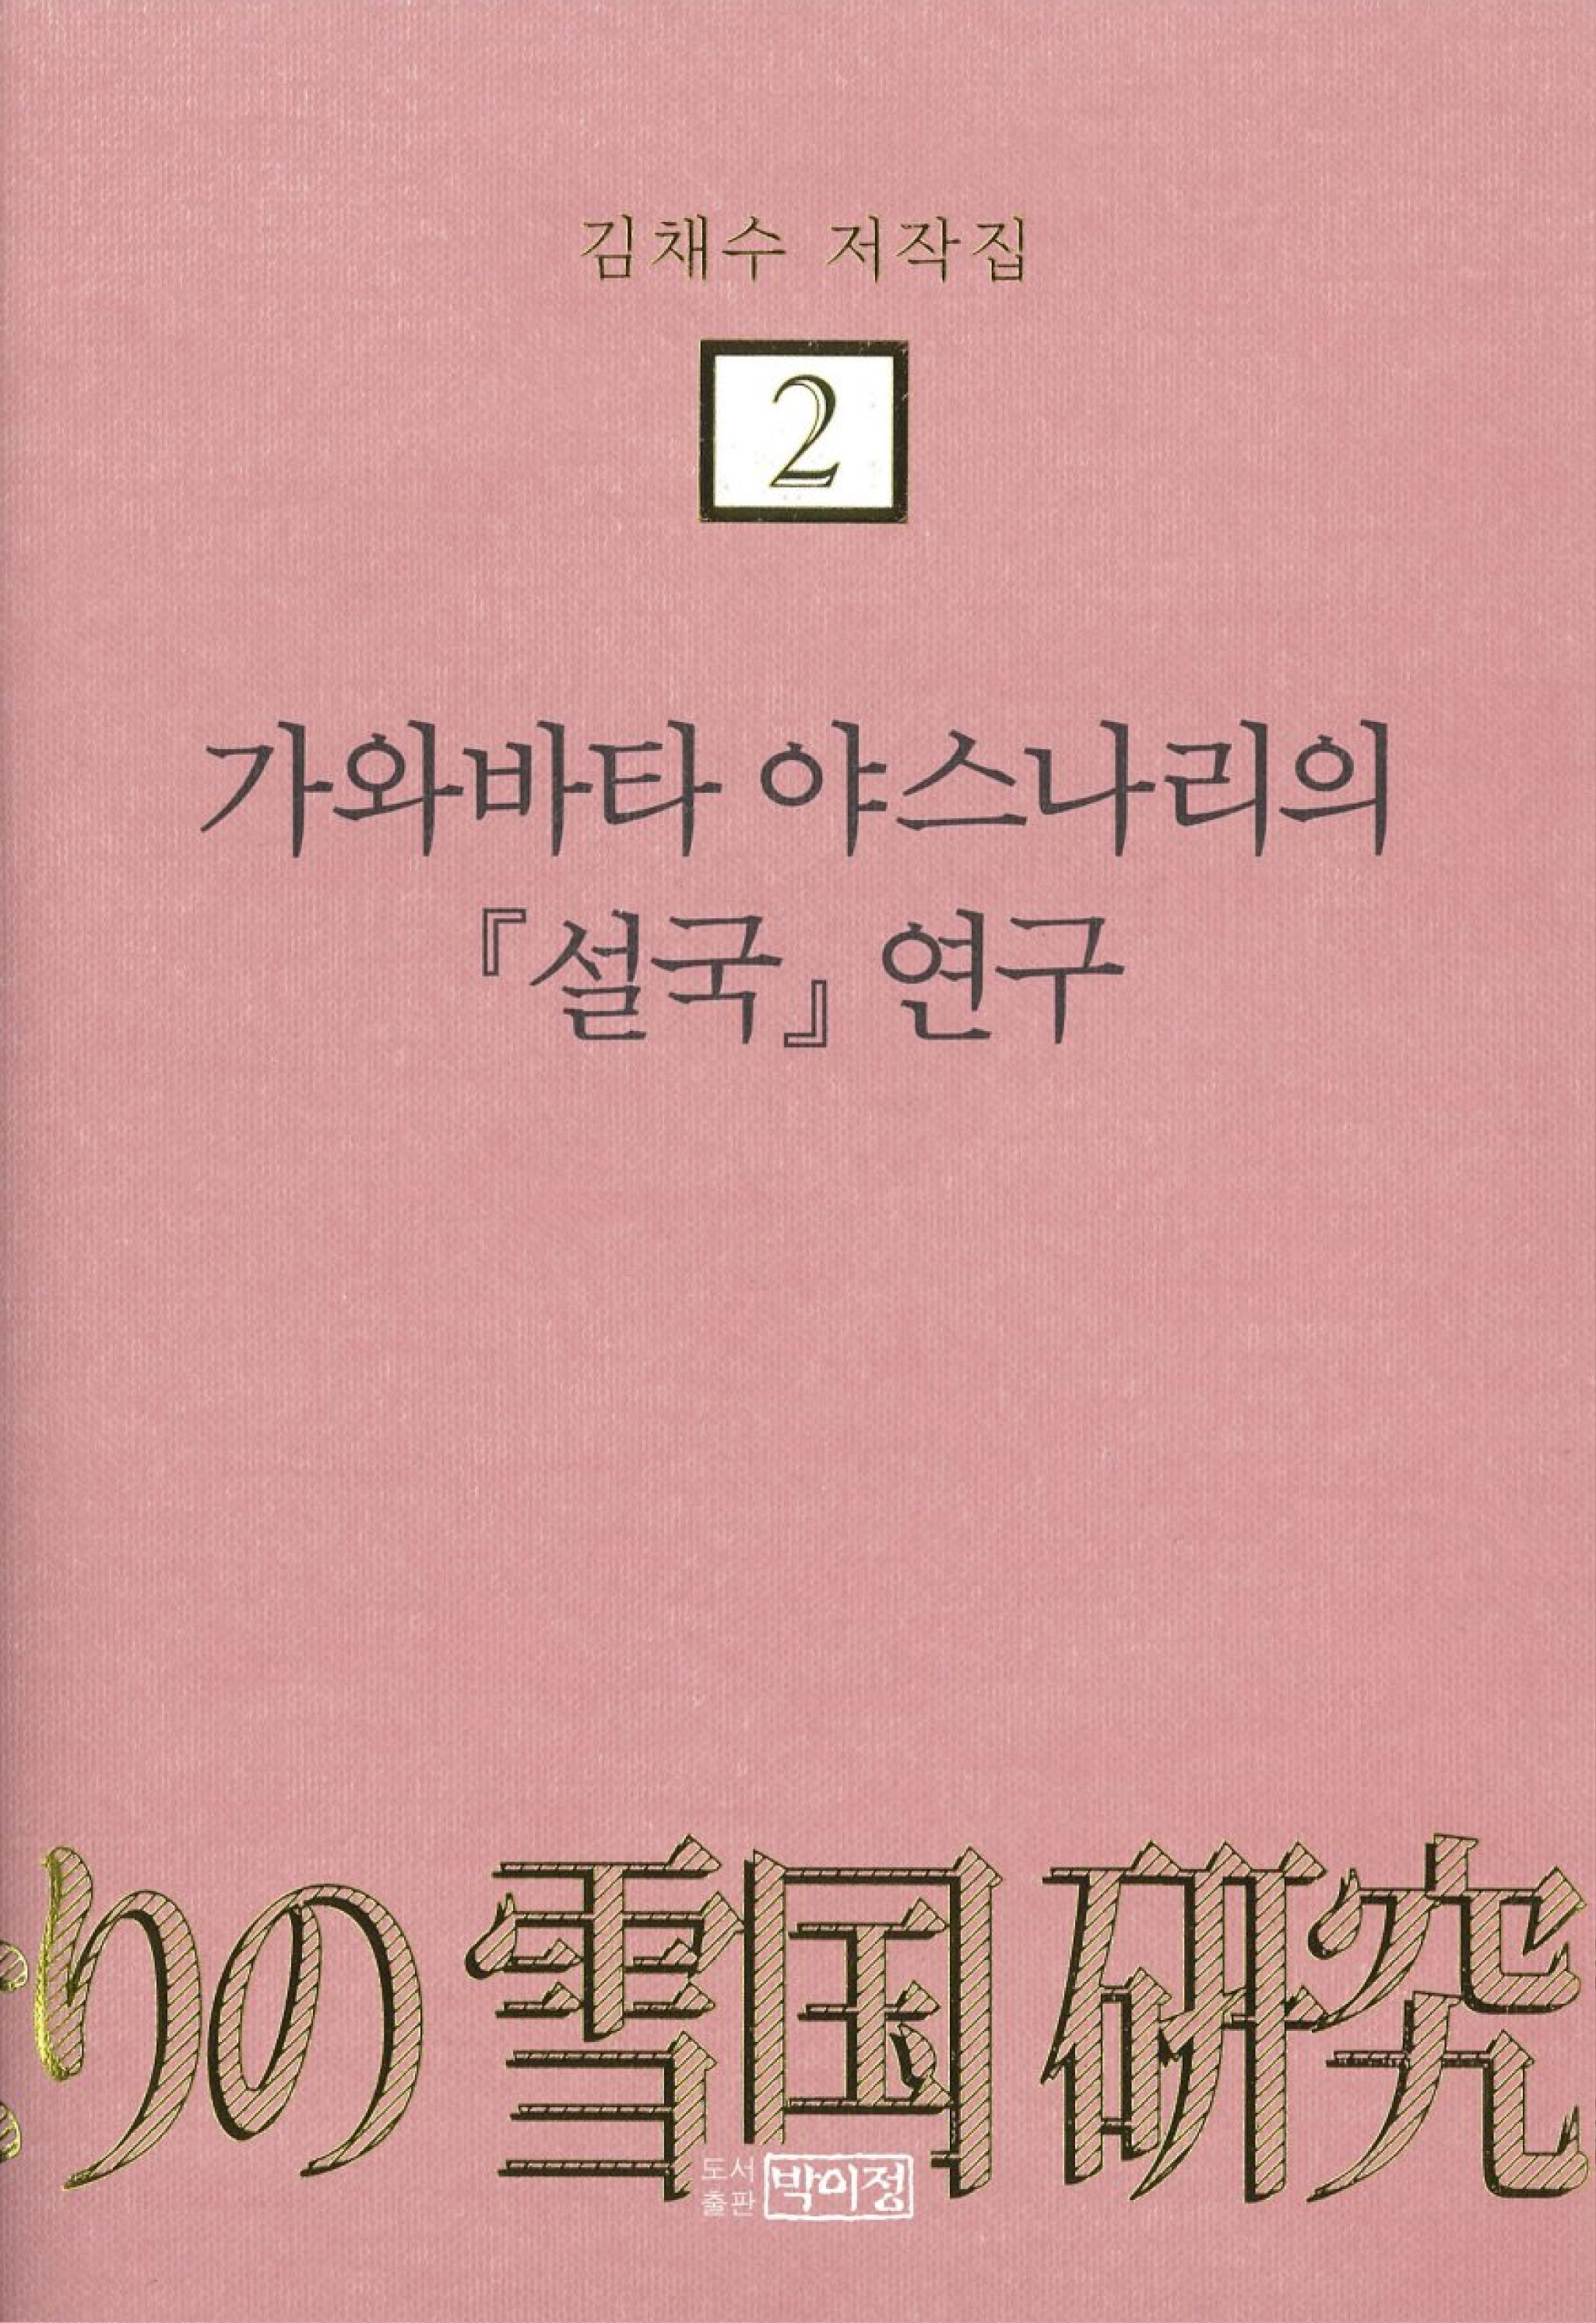 김채수저작집2. 가와바타 야스나리의 『설국』 연구